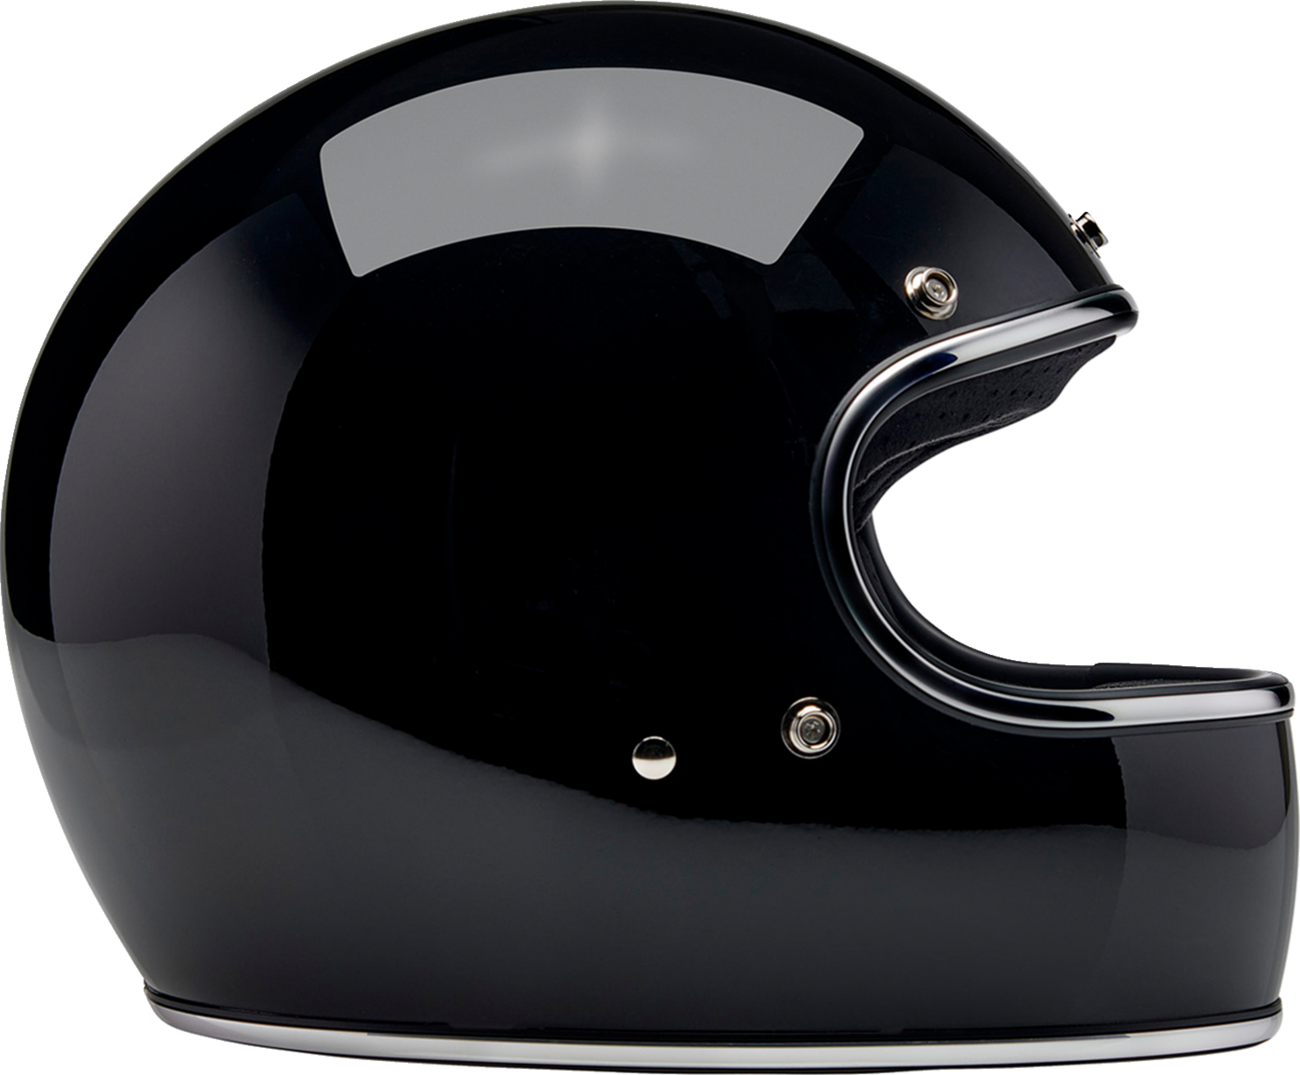 BILTWELL Gringo Helmet - Gloss Black - XL 1002-101-505